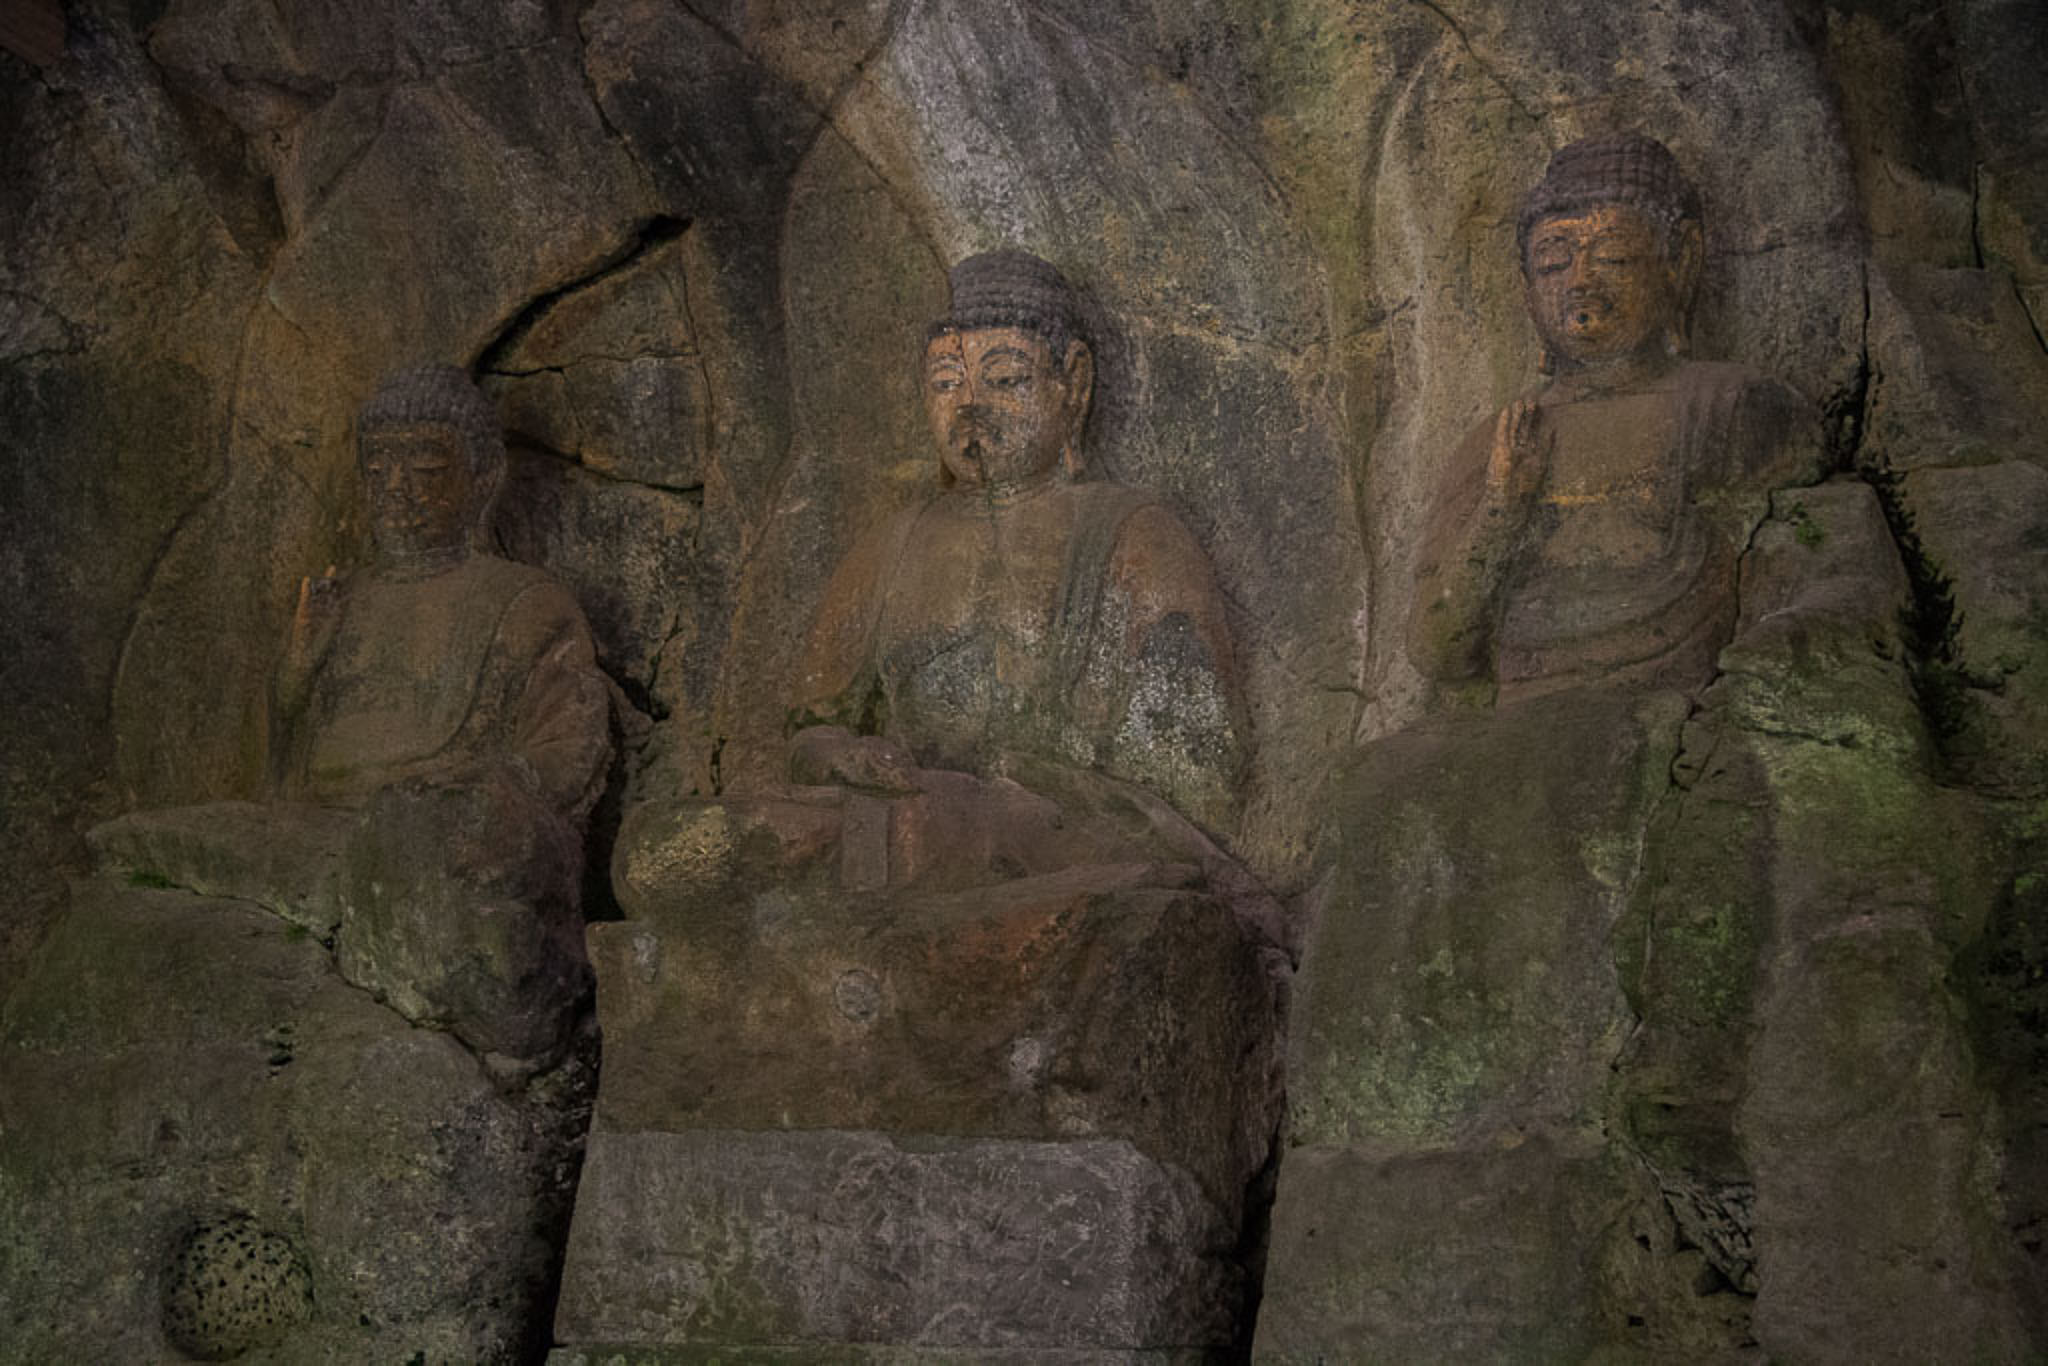 The Three Nyorai Statues